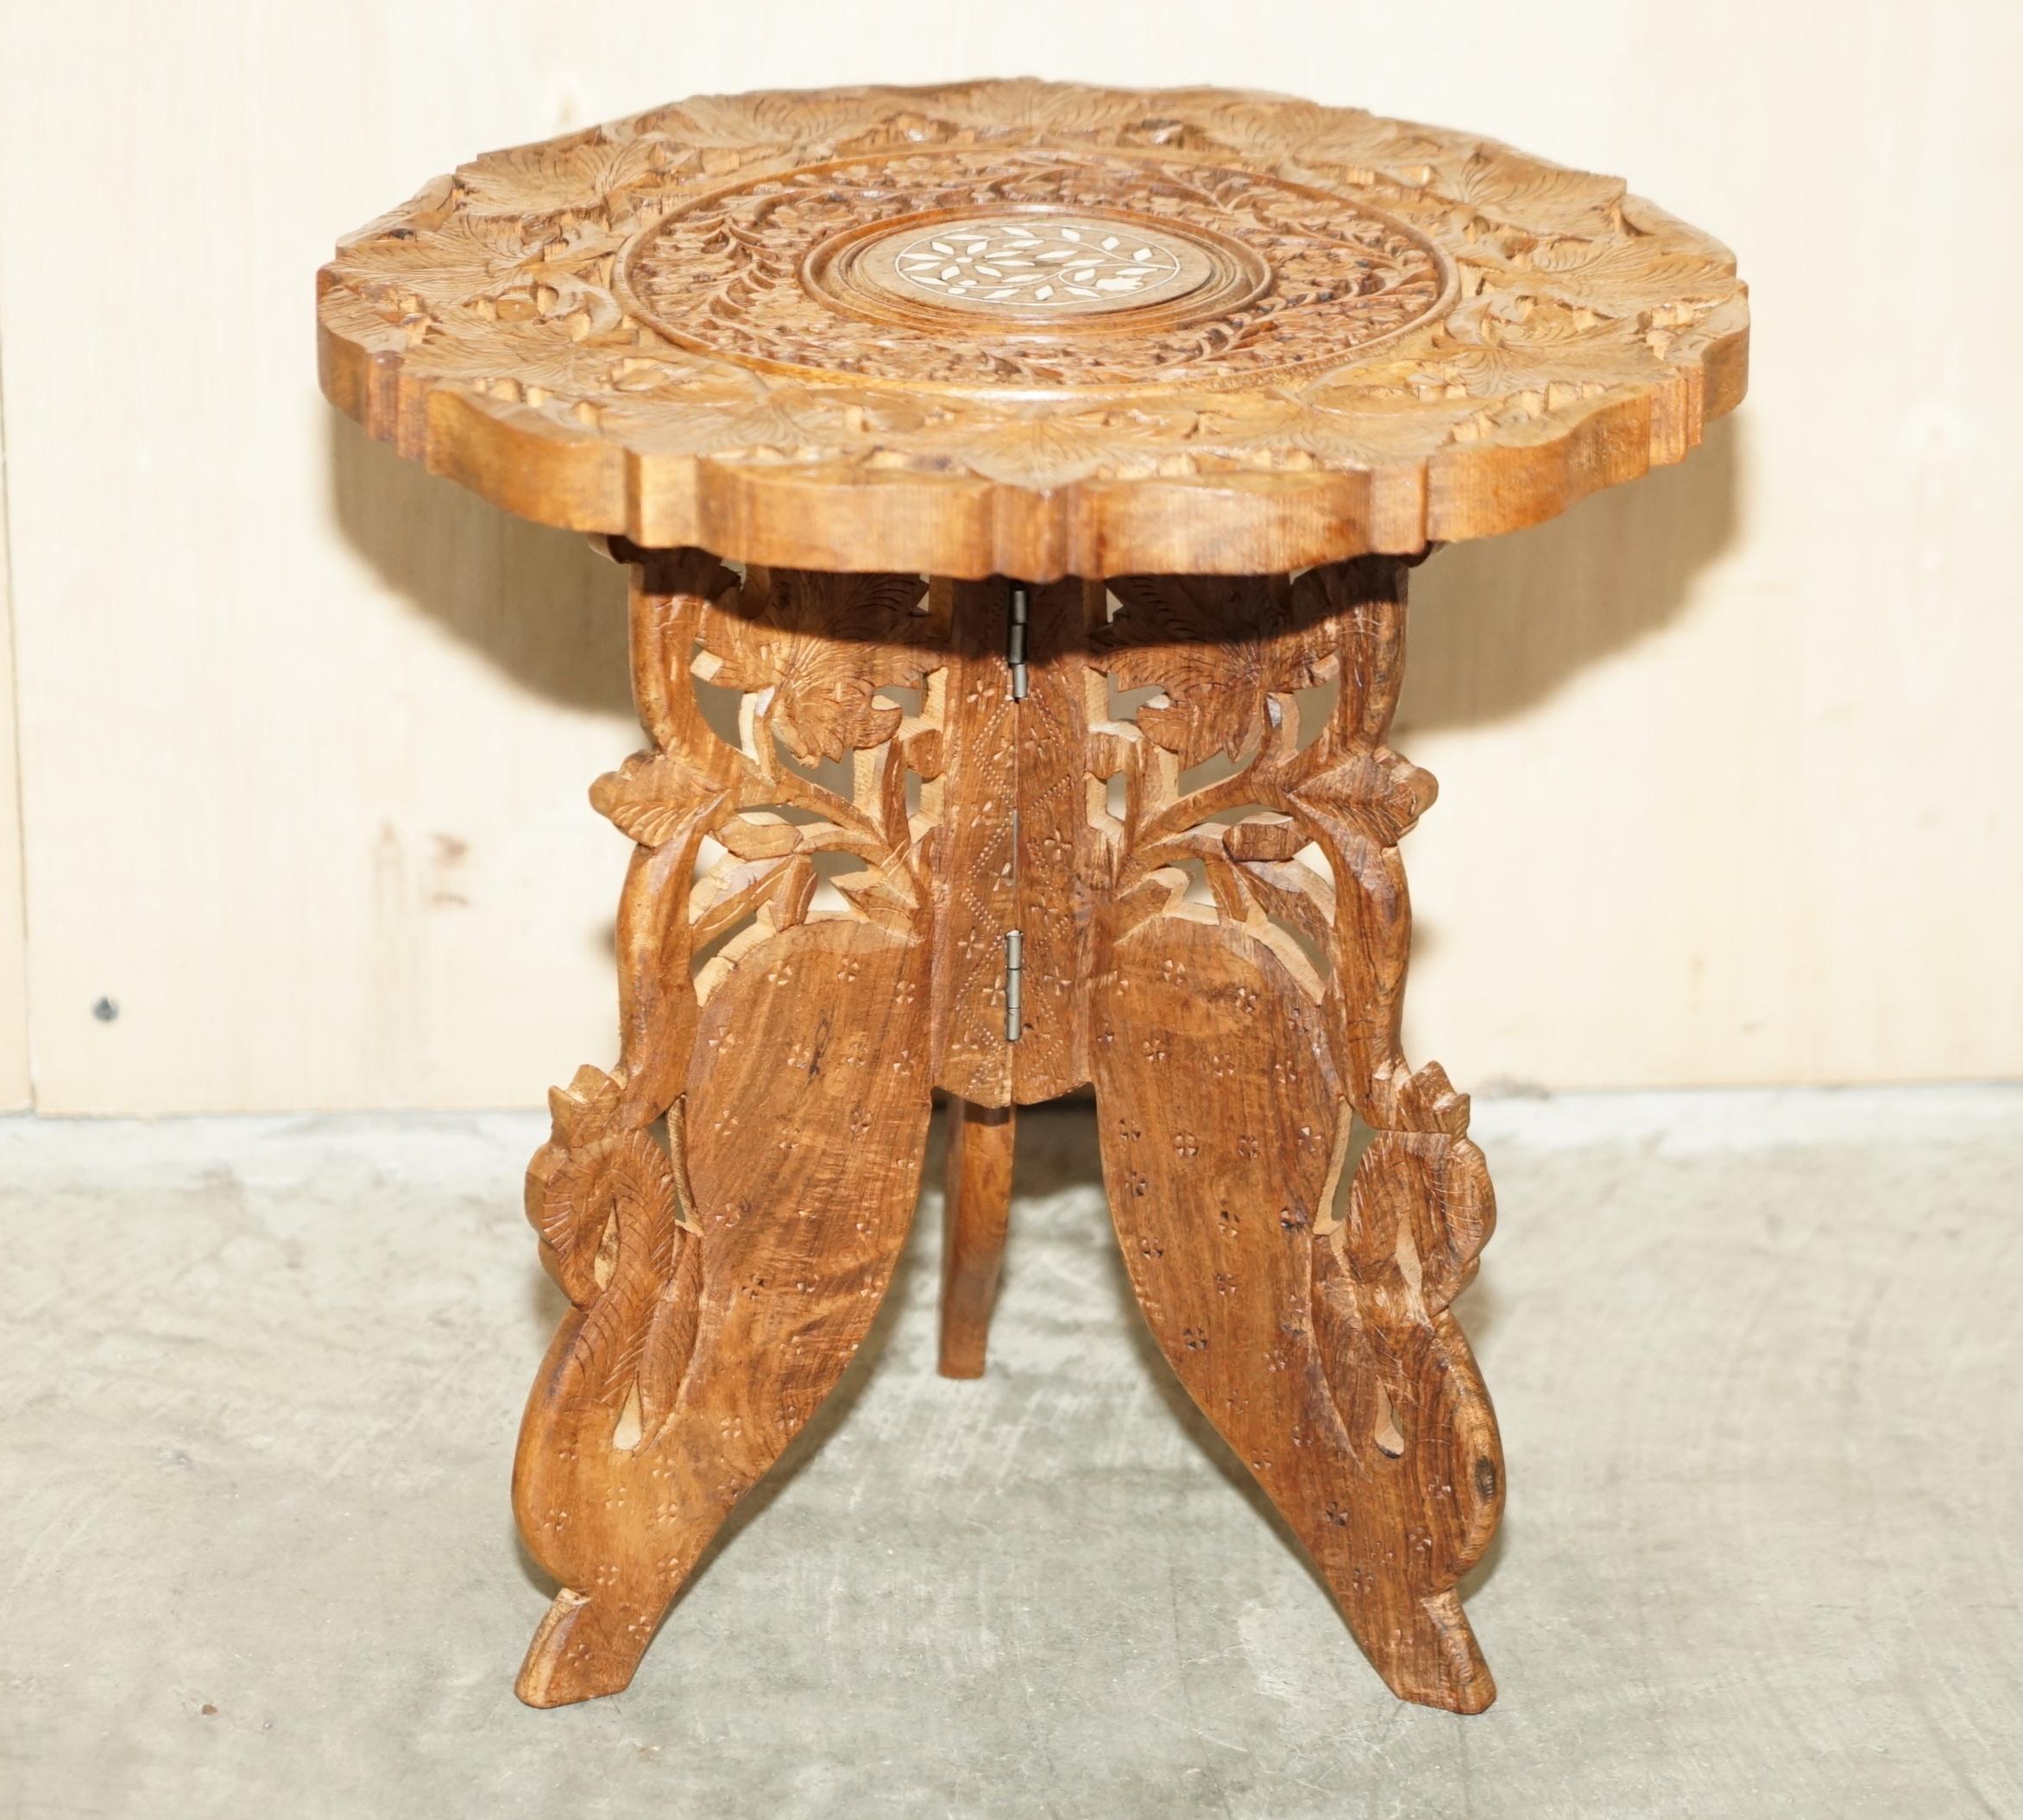 Nous sommes ravis d'offrir à la vente cette charmante table d'appoint birmane en bois de rose massif, sculptée à la main. 

Une très belle table décorative, qui peut être utilisée comme lampe, vin ou table d'appoint.

Sculptée de haut en bas de